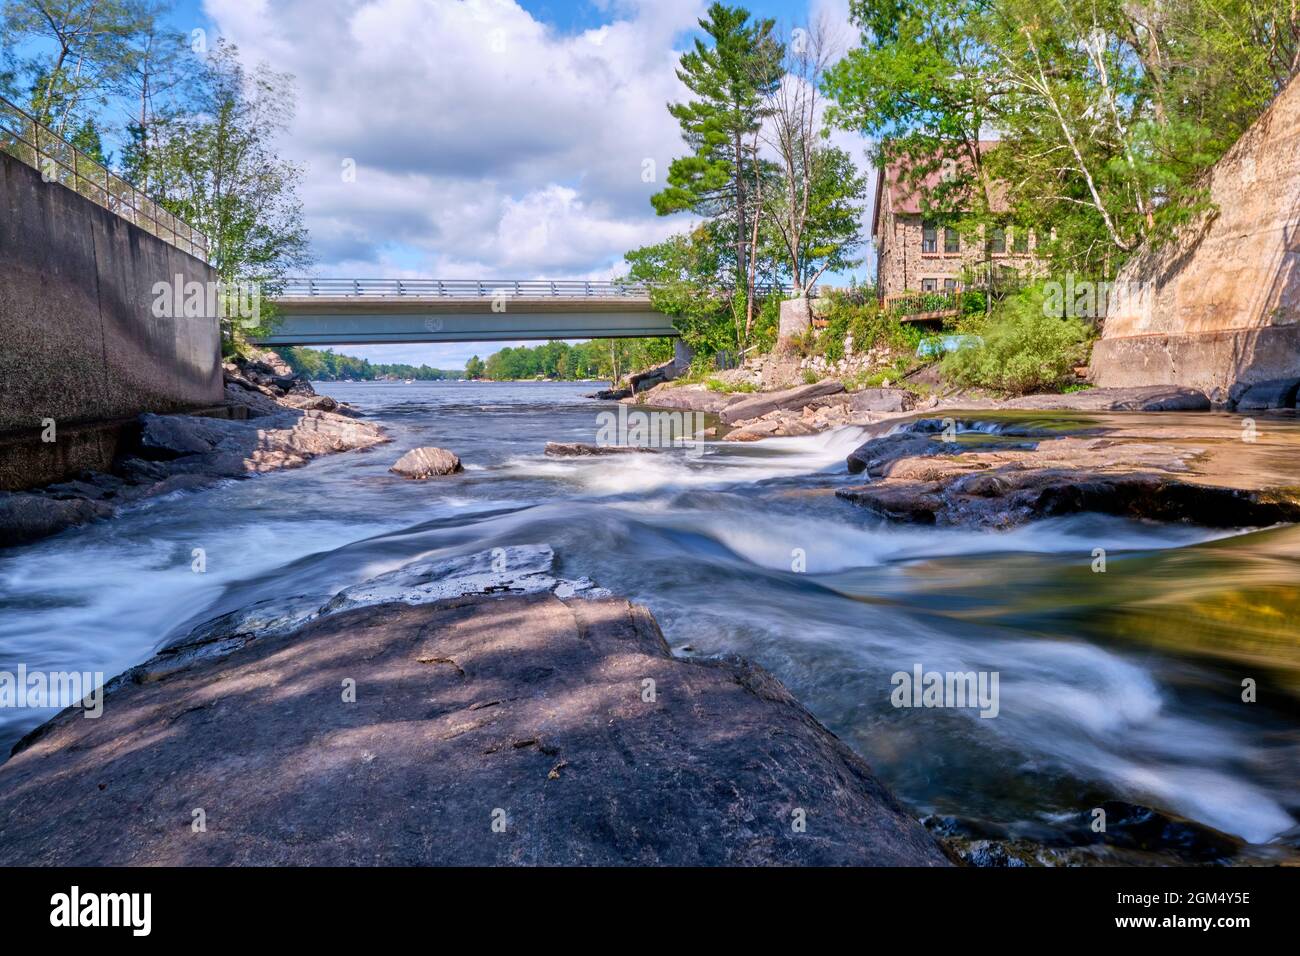 Bala Falls befinden sich in der kleinen Touristenstadt Bala Ontario, Kanada. Hier fließt Wasser aus dem See Muskoka in den Moon River. Stockfoto